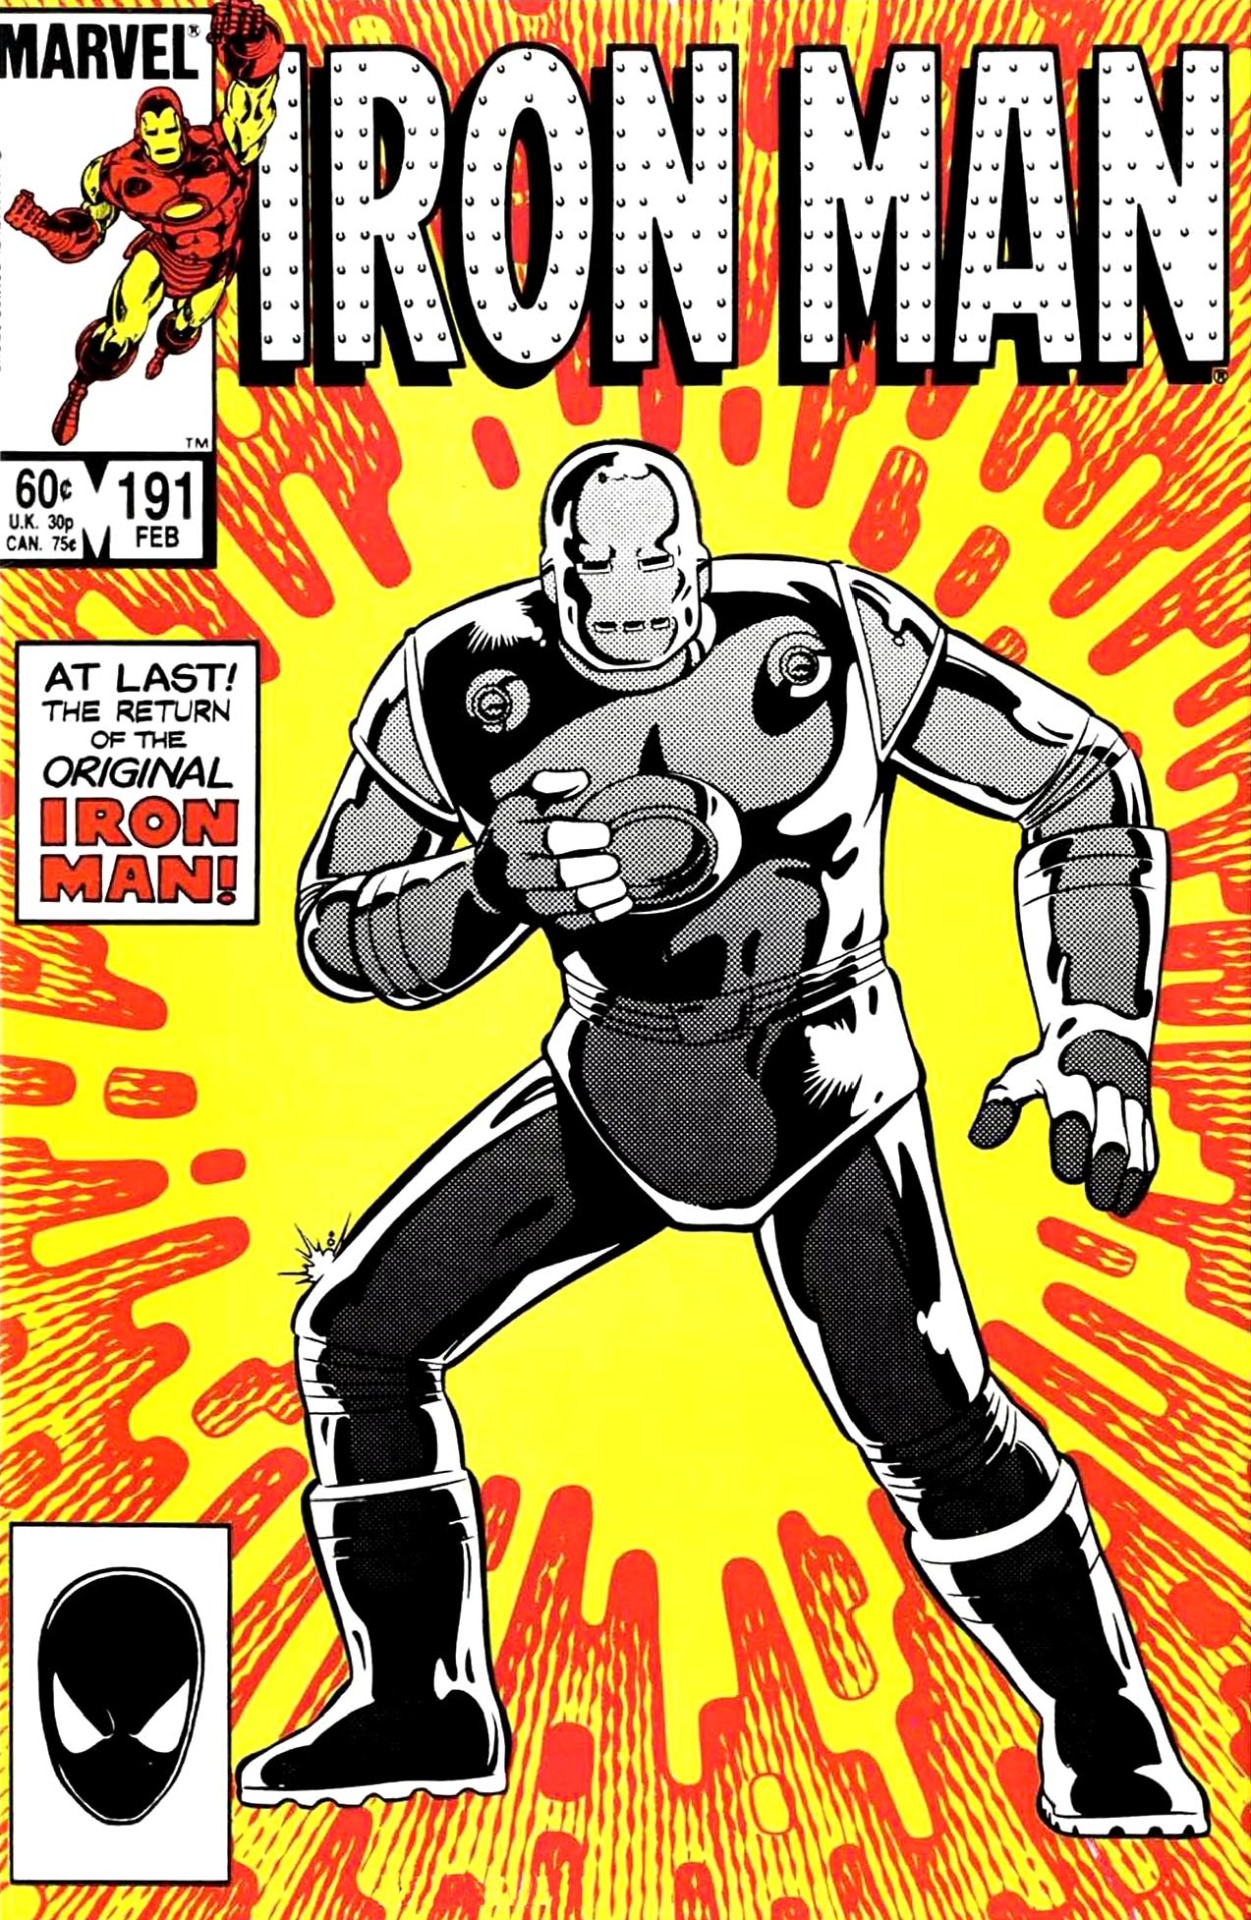 Tales of Suspense Facsimile Edition #39 CGC 9.8 Marvel 2020 Jack Kirby